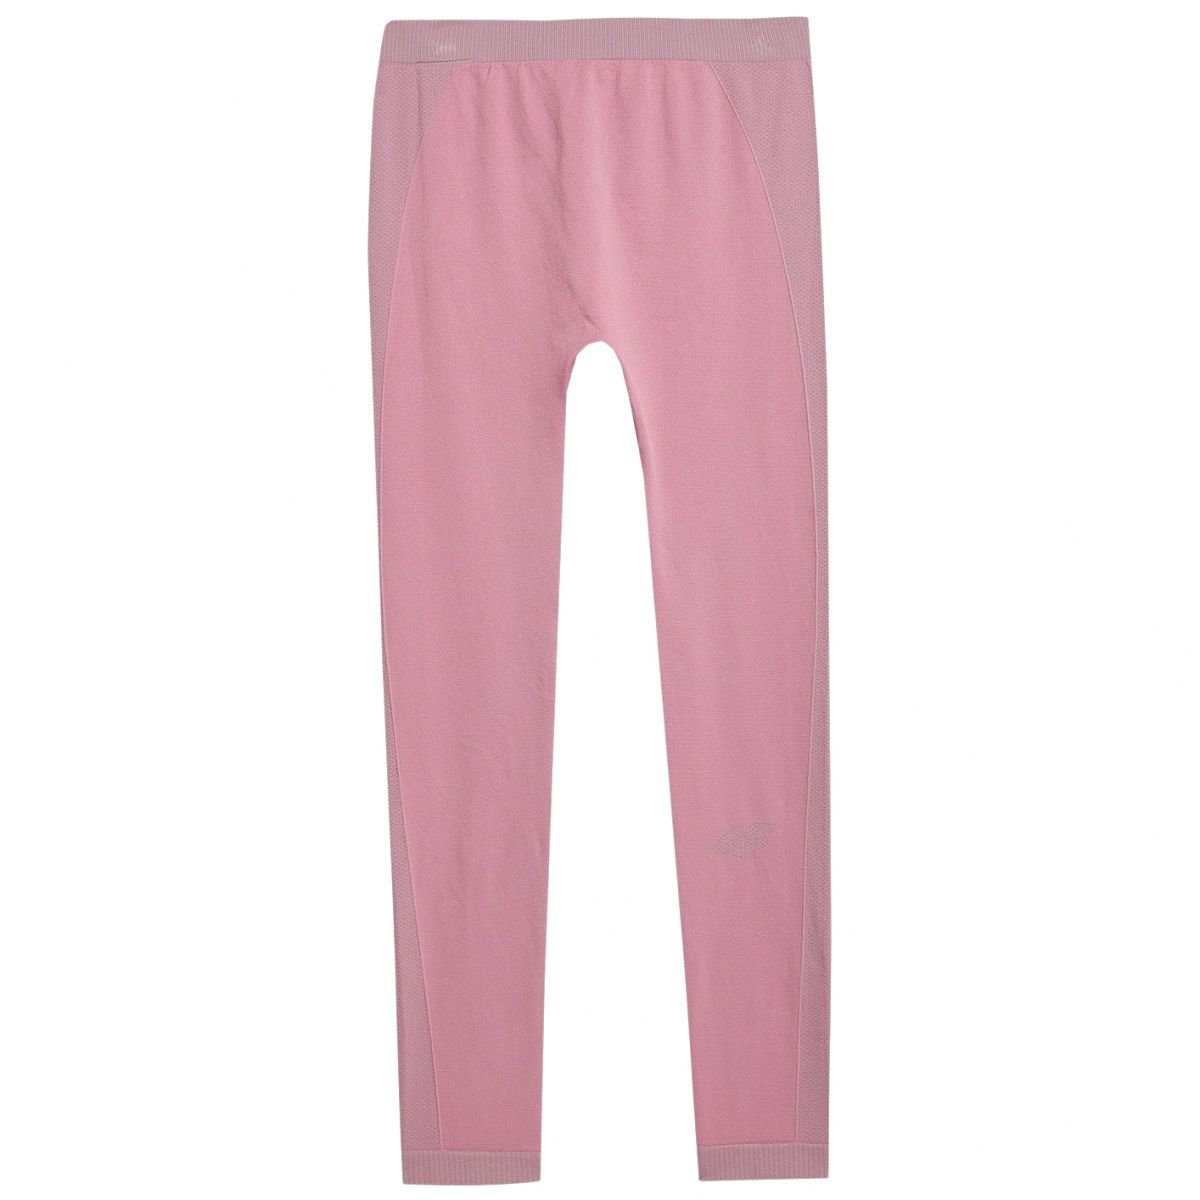 4F Mia, ski underwear, junior, dark pink